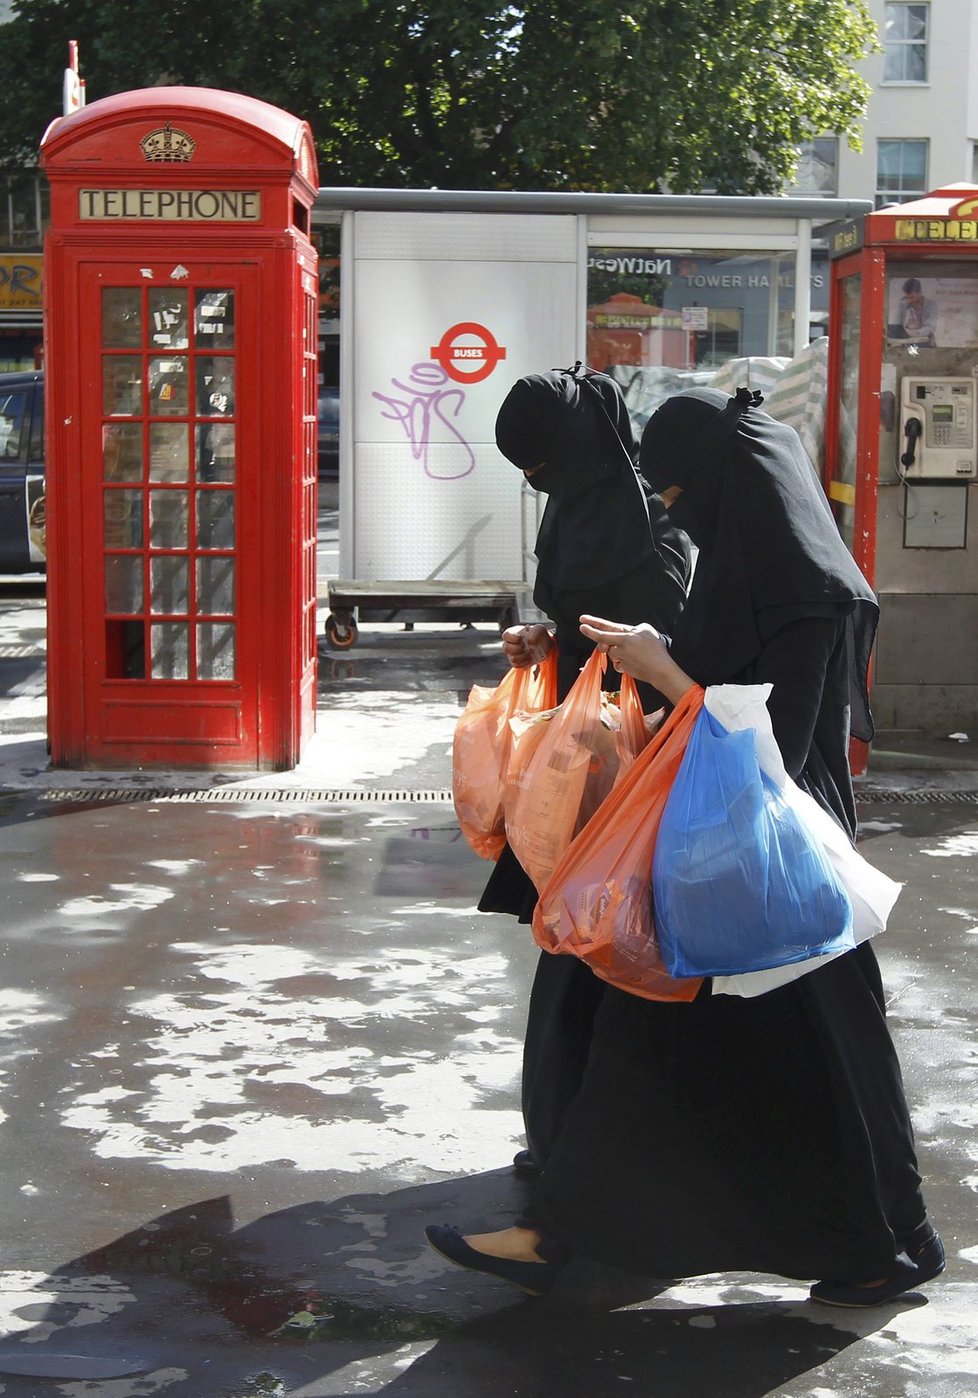 Dle konzervativních odhadů tvoří muslimové zhruba 13 procent londýnské populace.